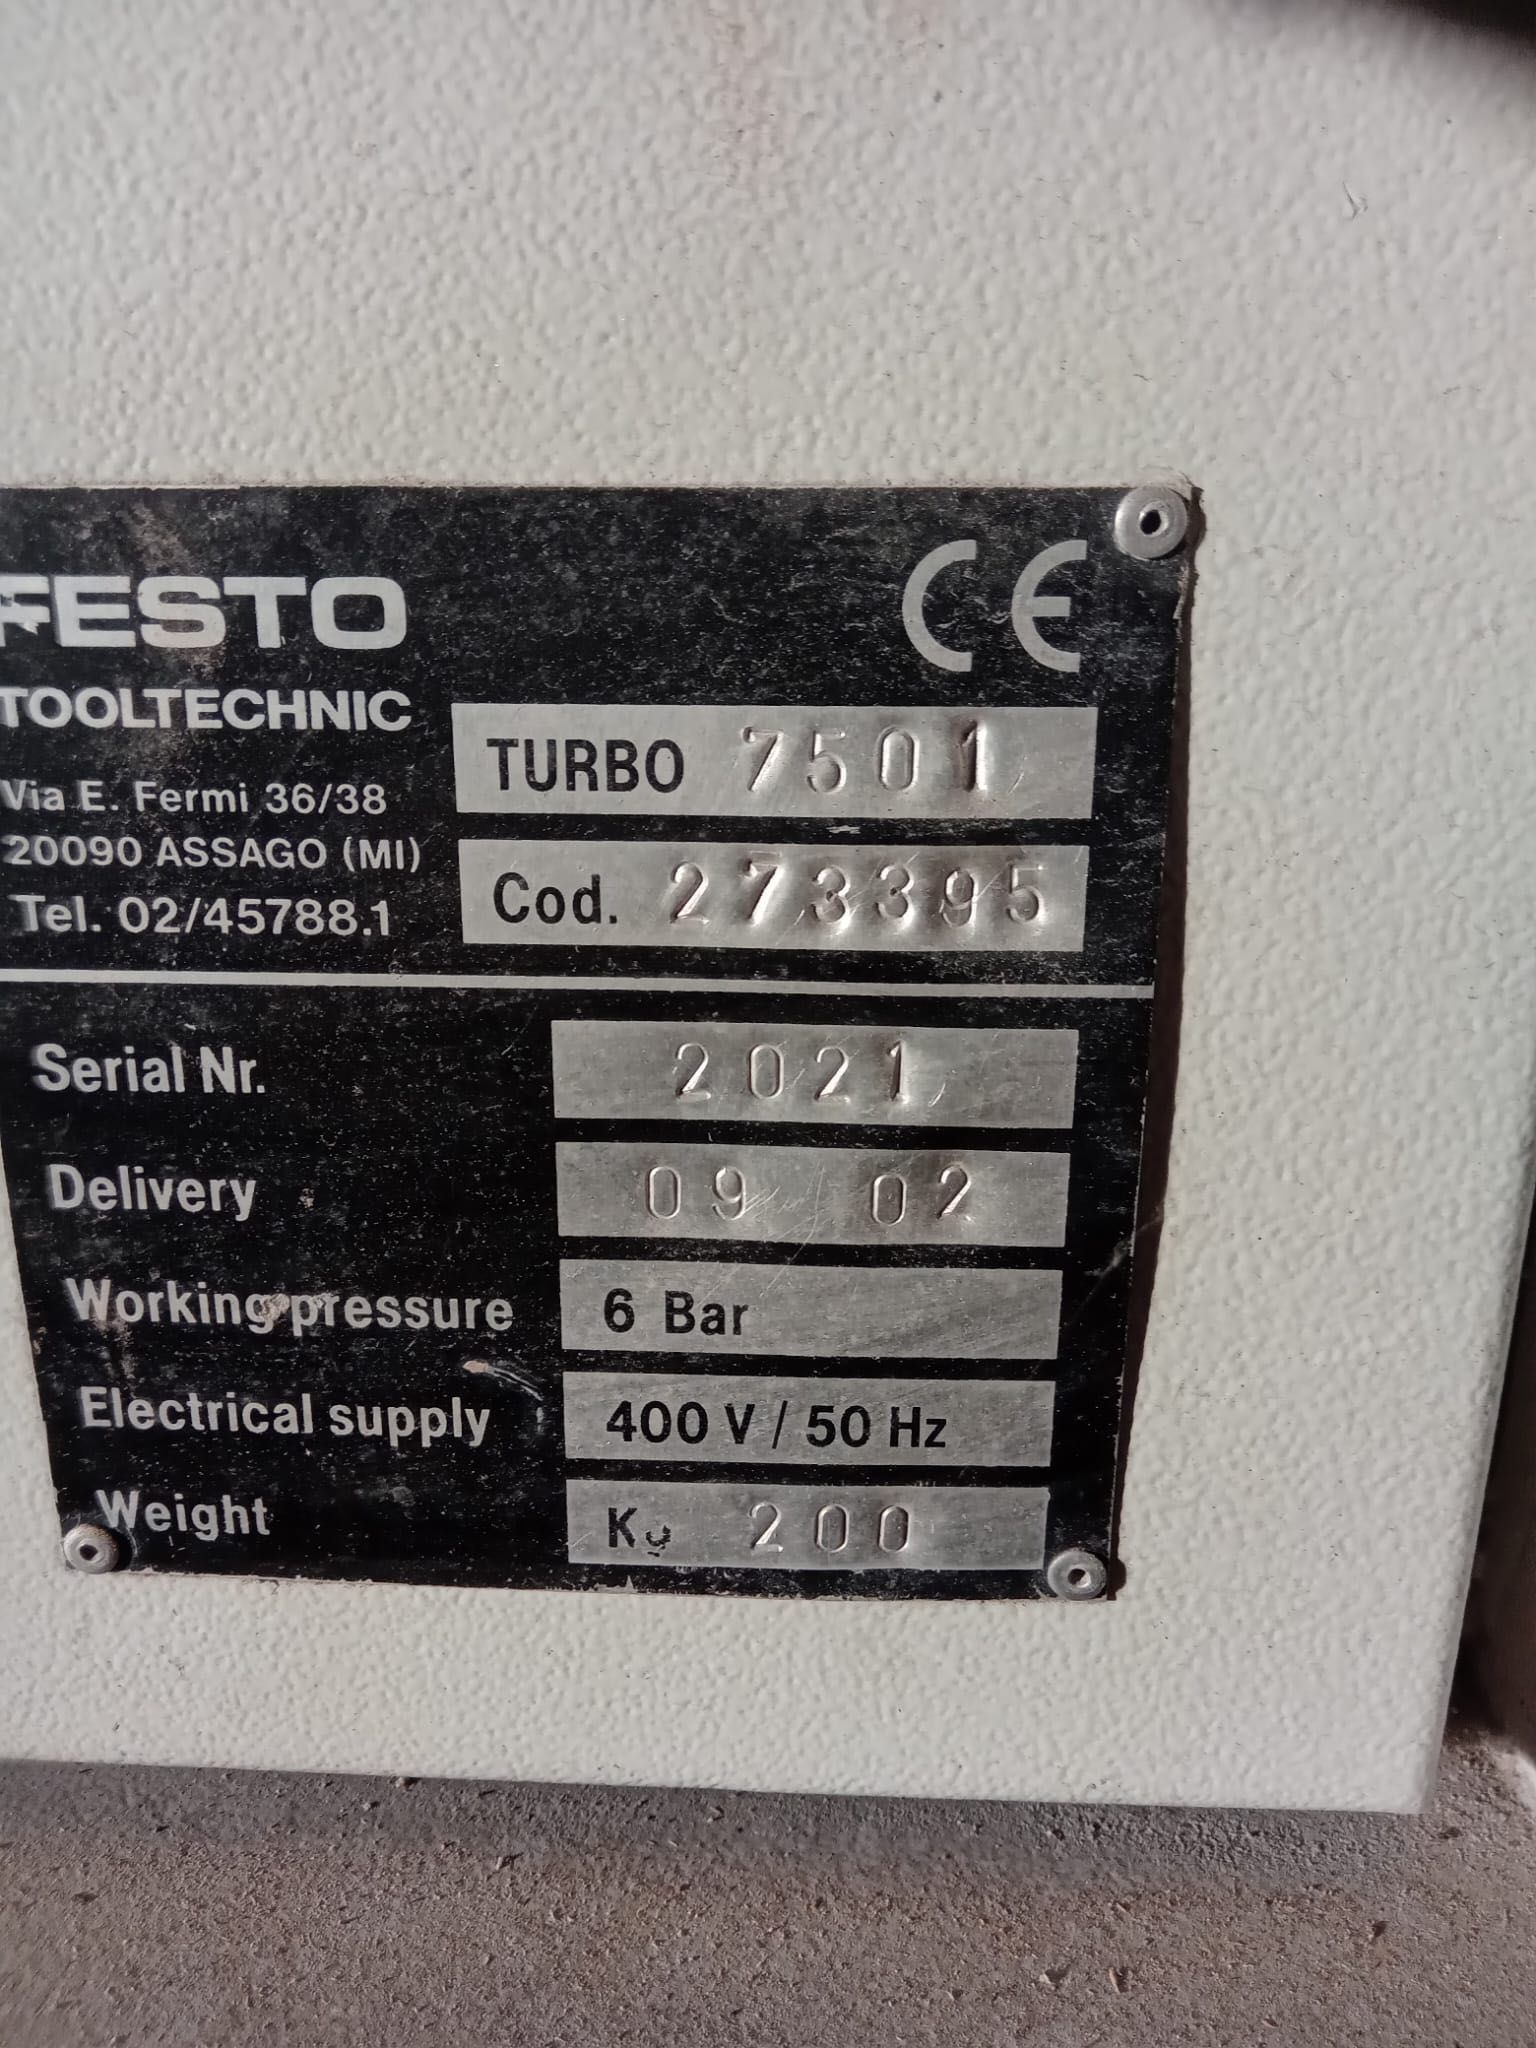 Vând aspirator festool turbo industrial 7501